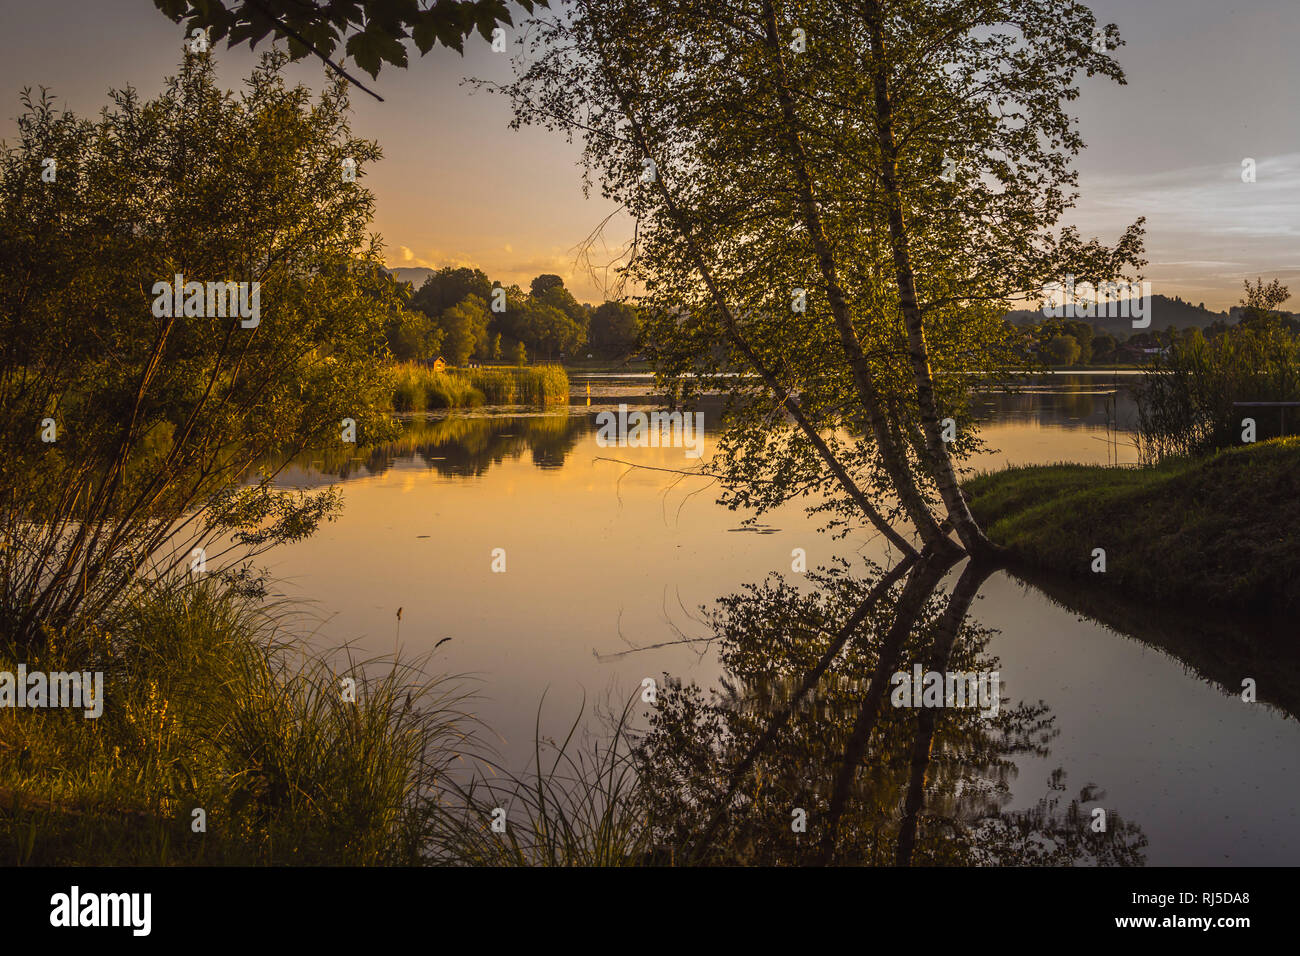 Drei Birken une einem Voir spiegeln sich bei Sonnenuntergang im Wasser Banque D'Images